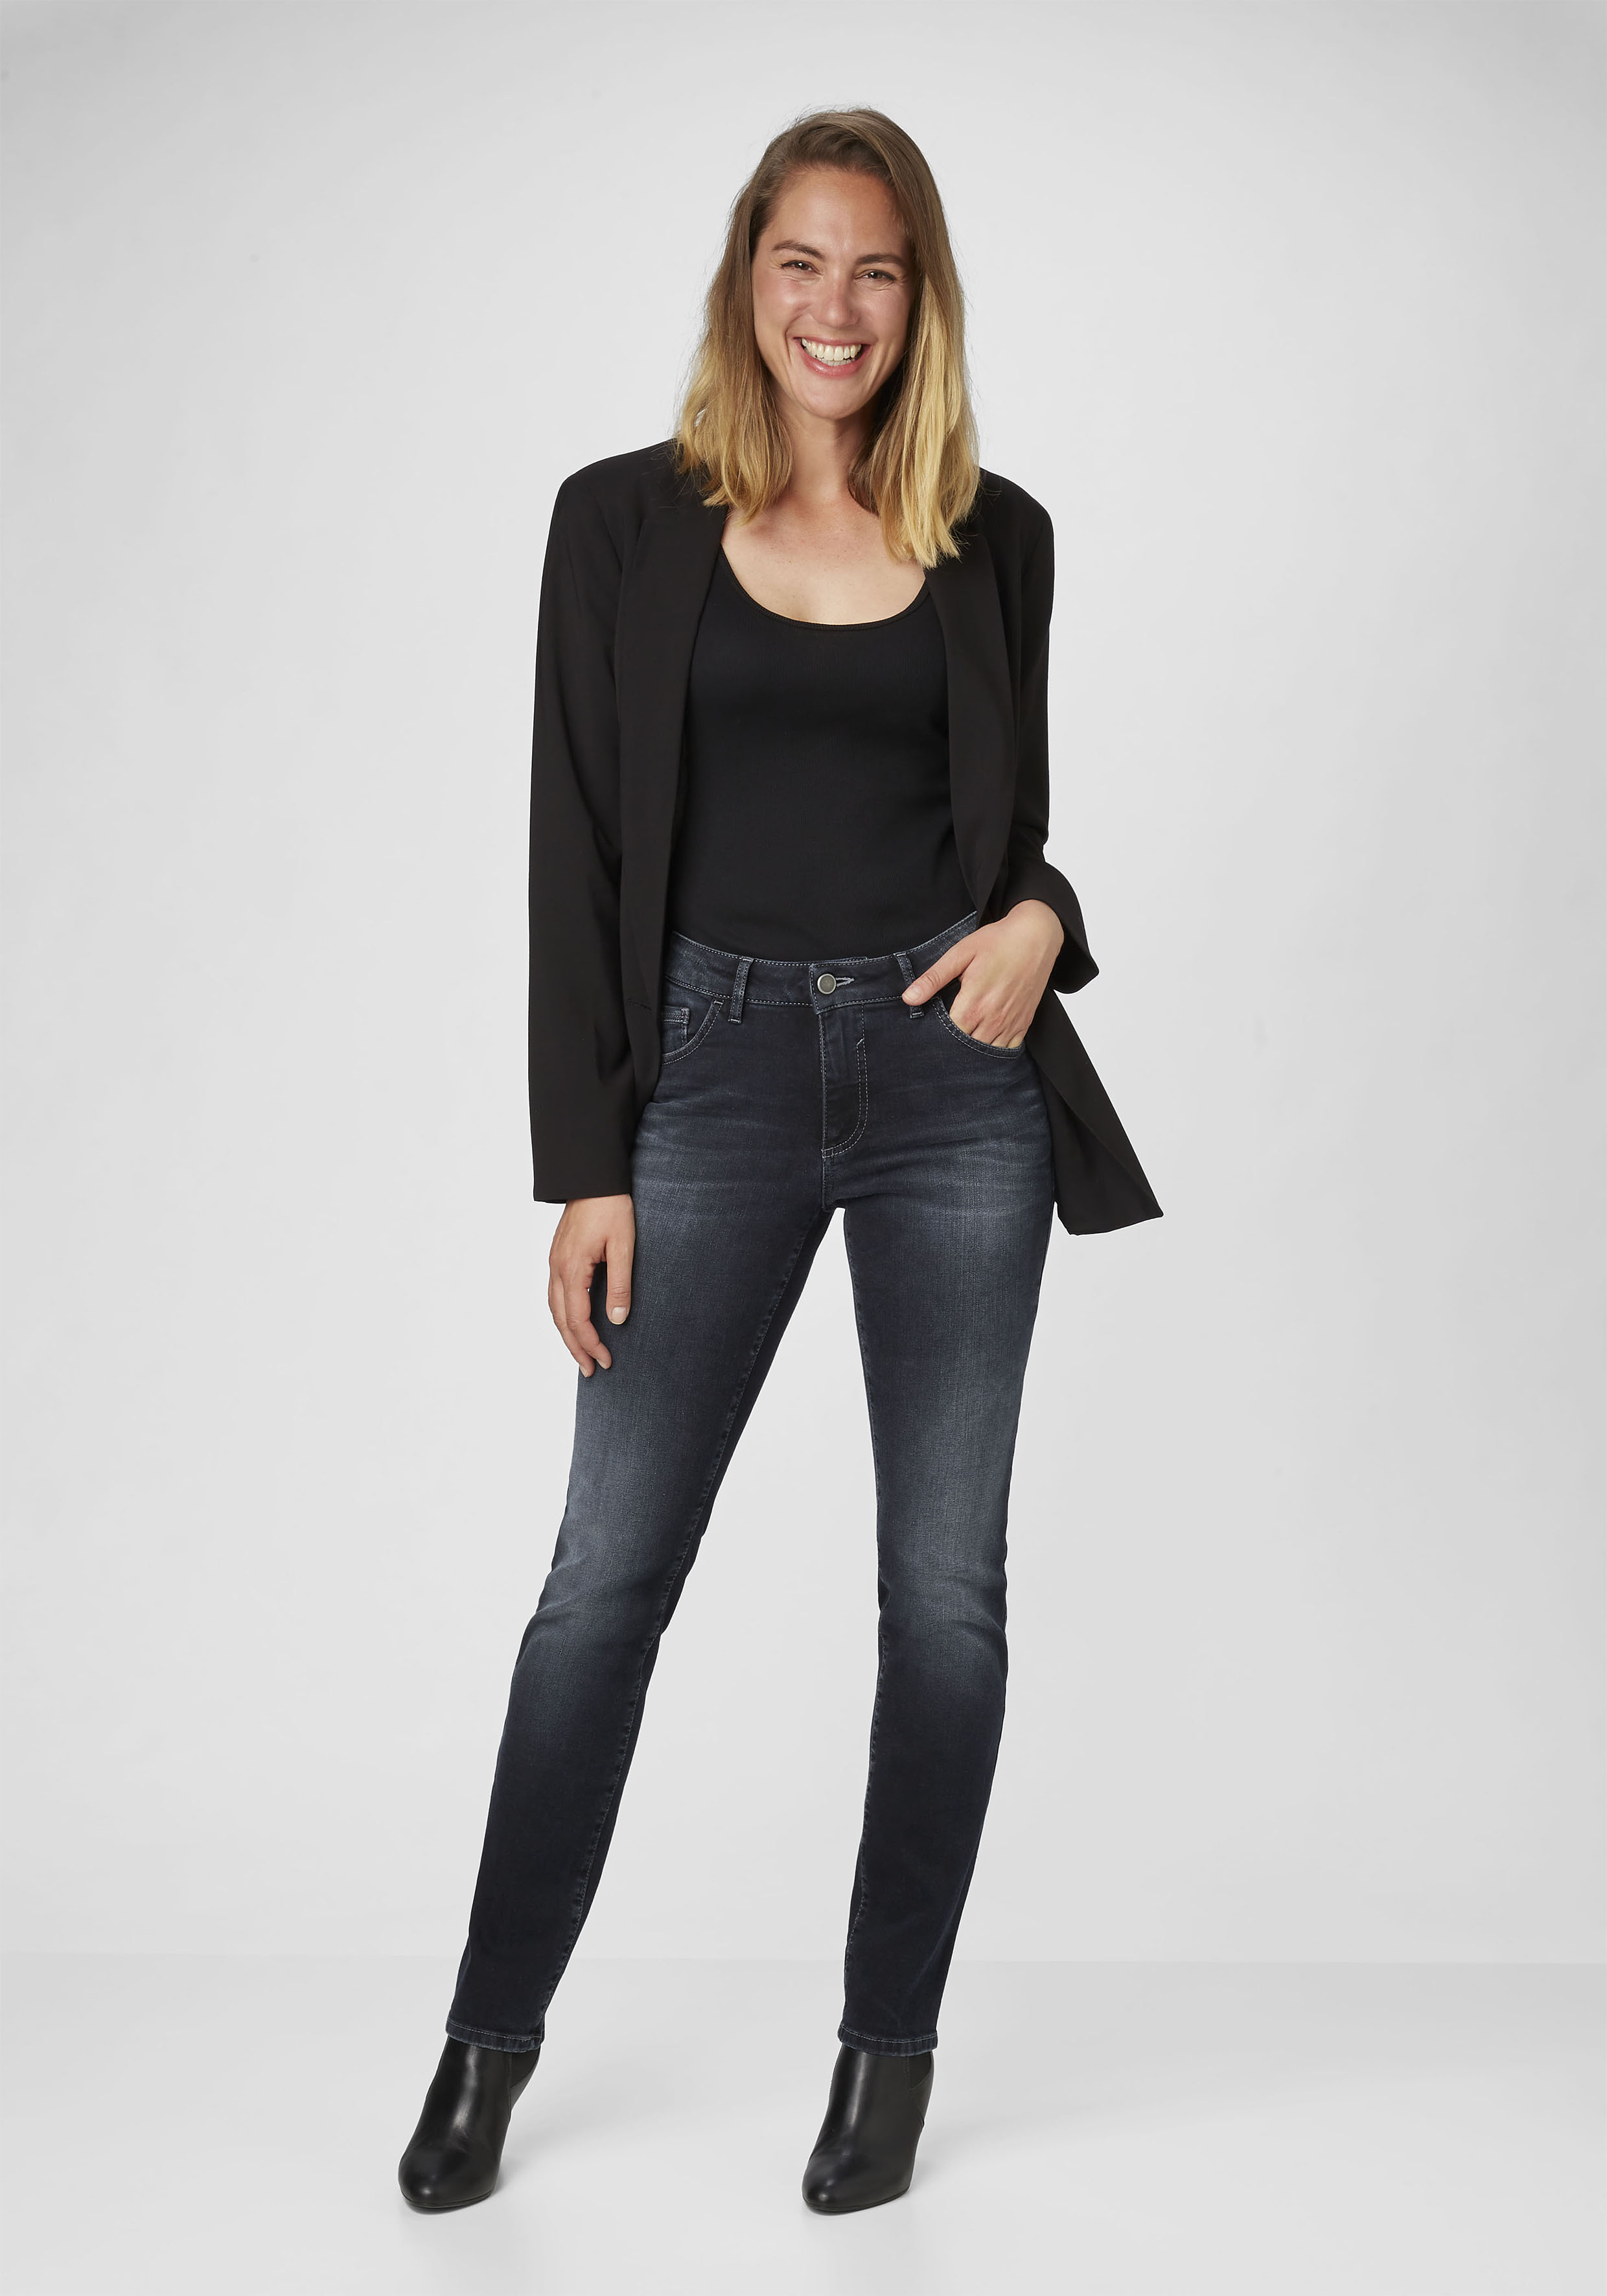 Damen-Jeans direkt vom Hersteller kaufen PADDOCK\'S Shop | Online